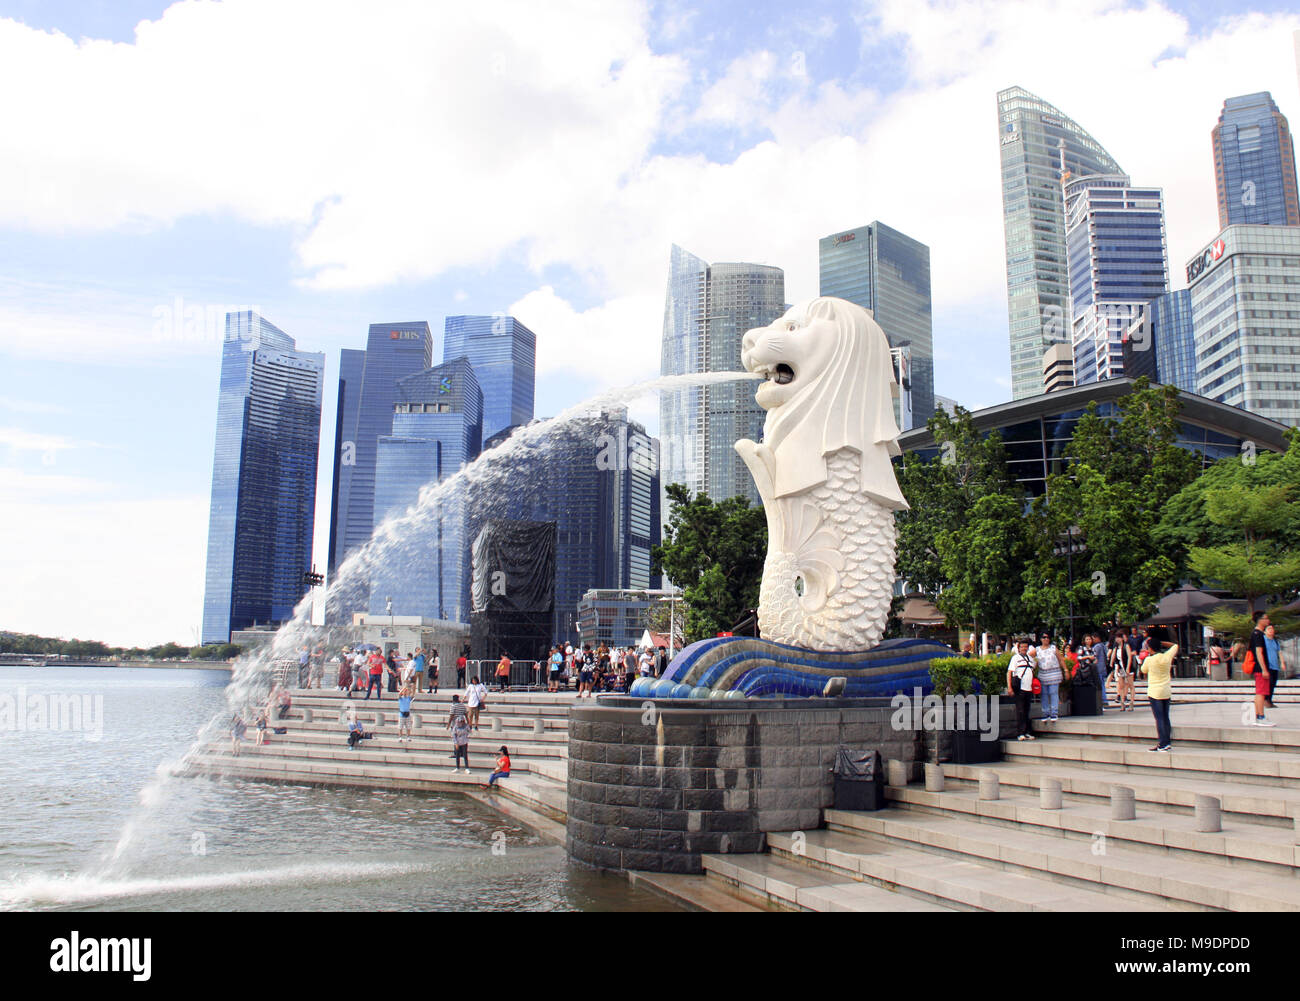 A Singapore il 8 marzo, 2018: statua Merlion fontana (la più famosa attrazione turistica) nel Parco Merlion e grattacieli nella città di Singapore. Foto Stock